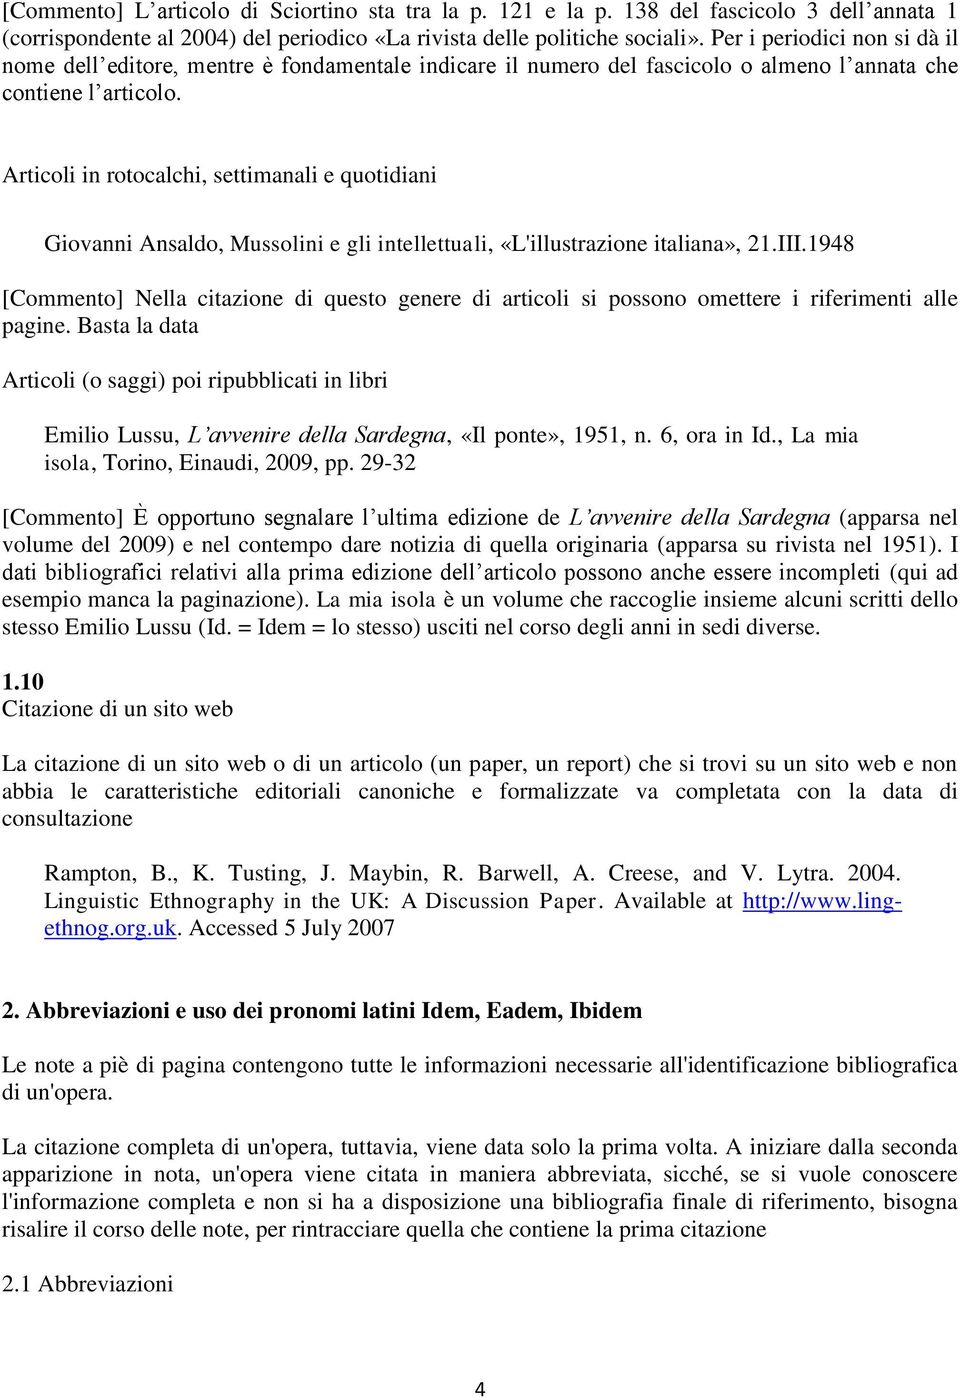 Articoli in rotocalchi, settimanali e quotidiani Giovanni Ansaldo, Mussolini e gli intellettuali, «L'illustrazione italiana», 1.III.